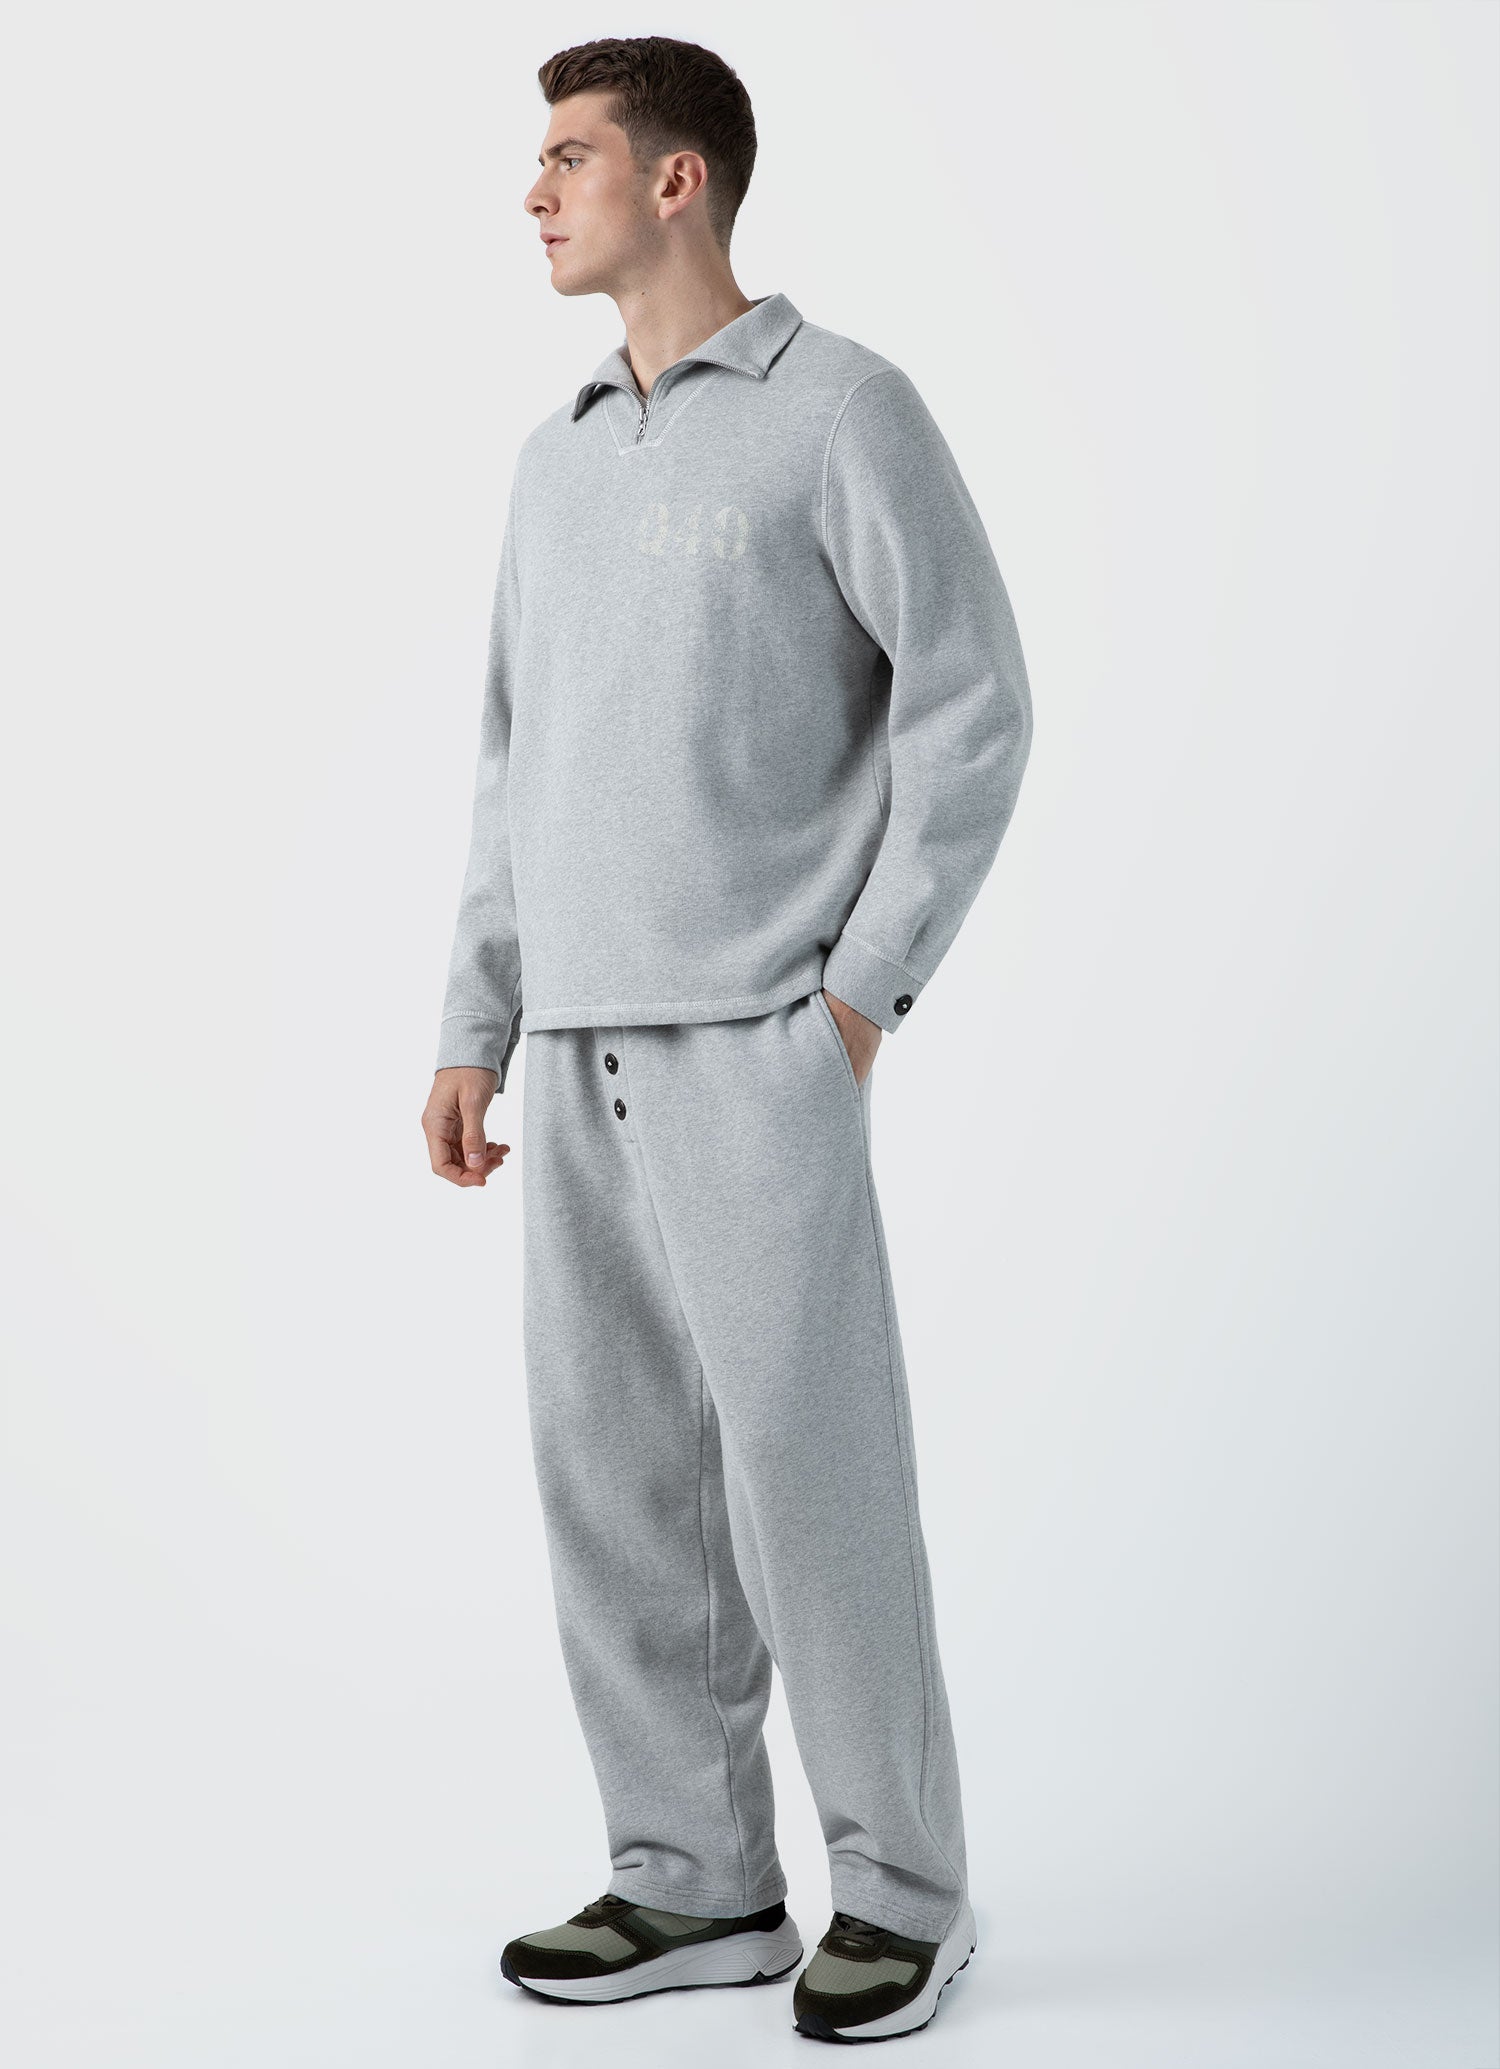 Men's Sunspel x Nigel Cabourn Half Zip Sweatshirt in Light Grey Melange